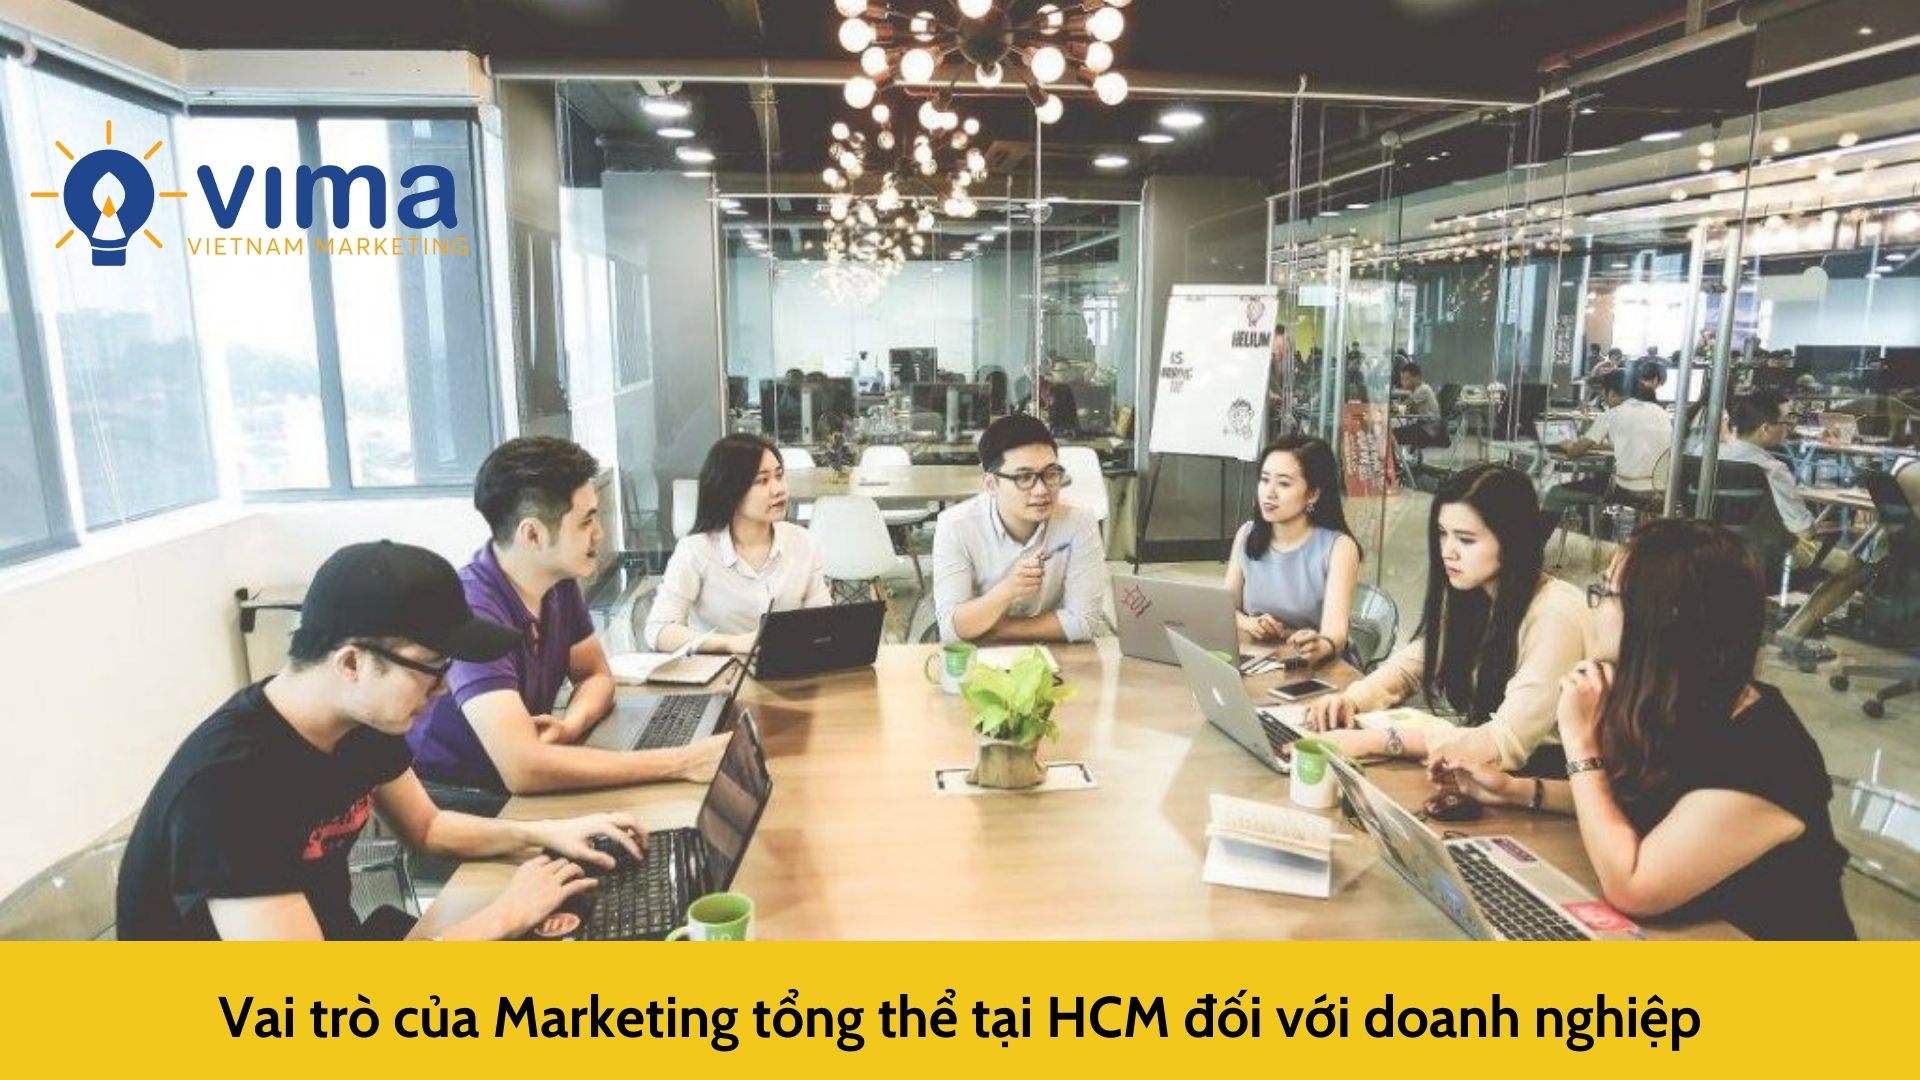 Vai trò của Marketing tổng thể tại HCM đối với doanh nghiệp